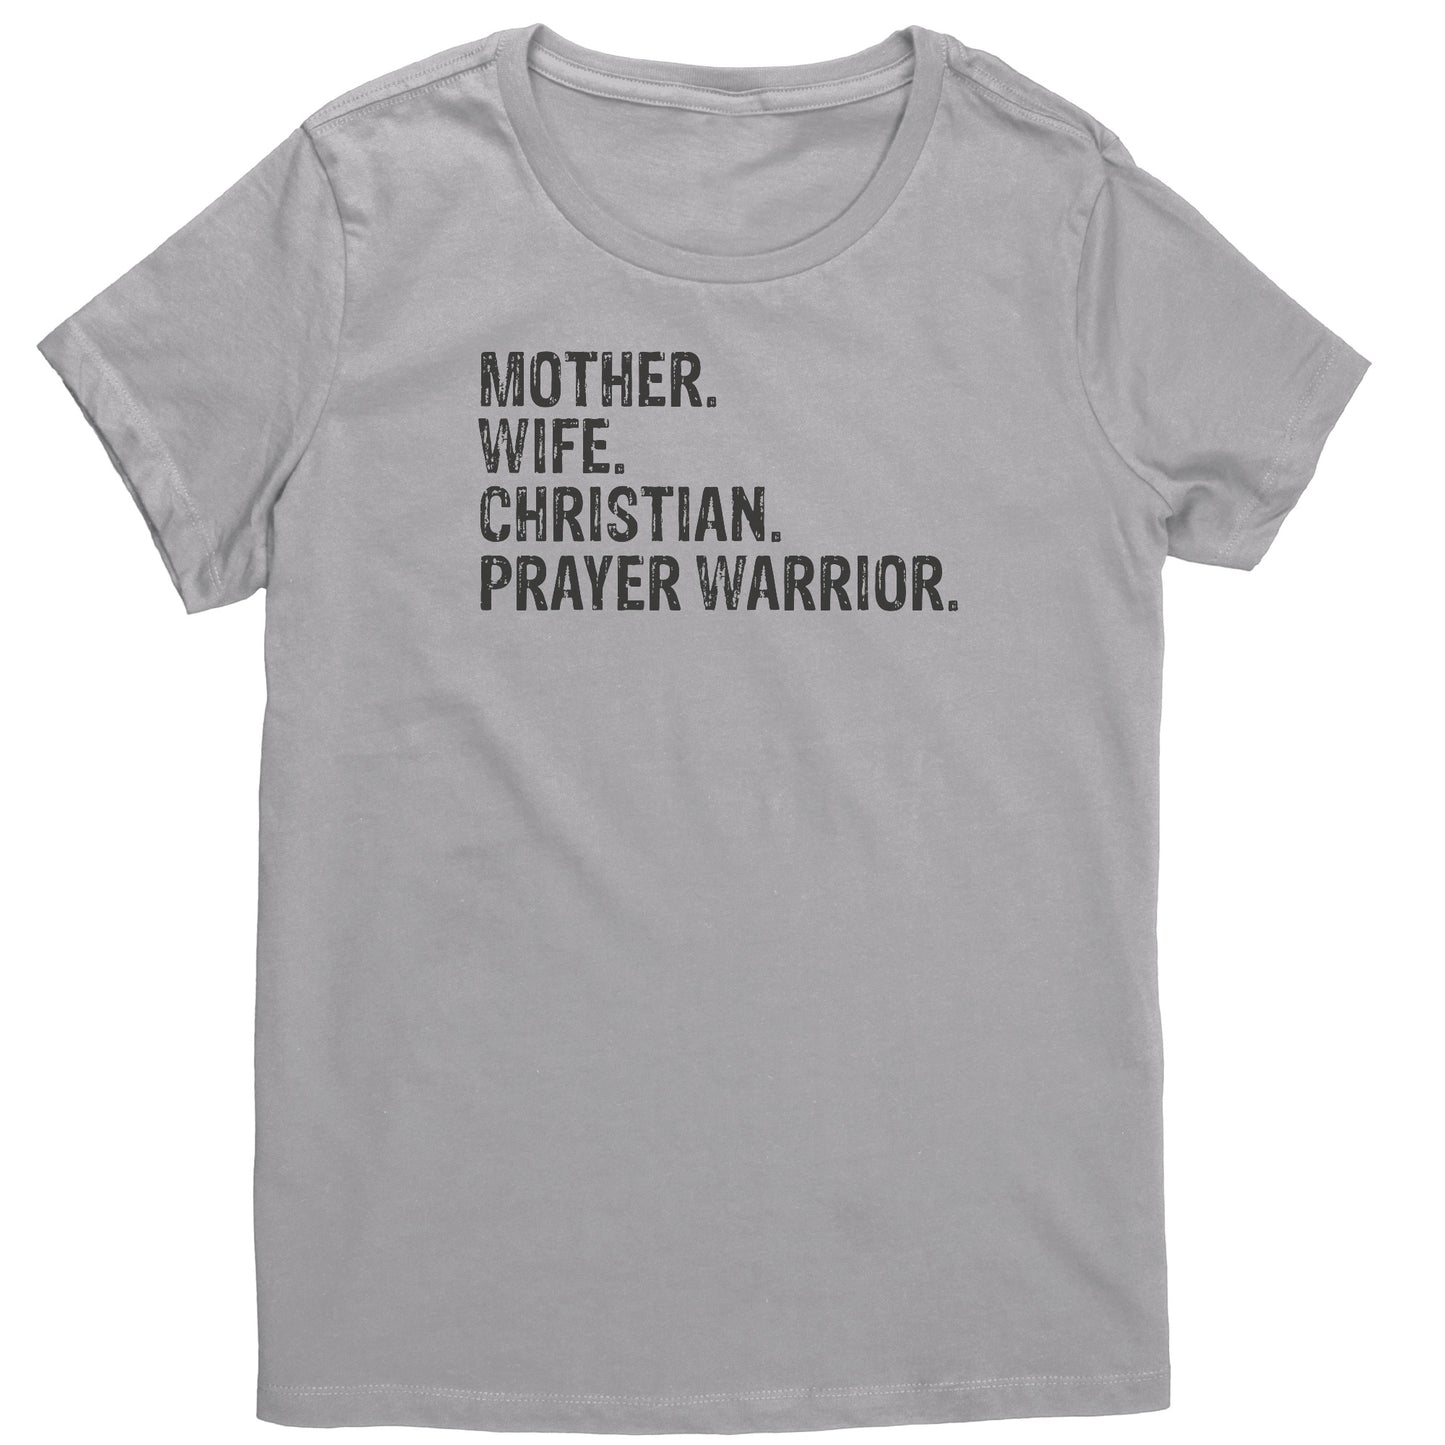 Mother. Wife. Christian. Prayer Warrior Women's T-Shirt Part 1